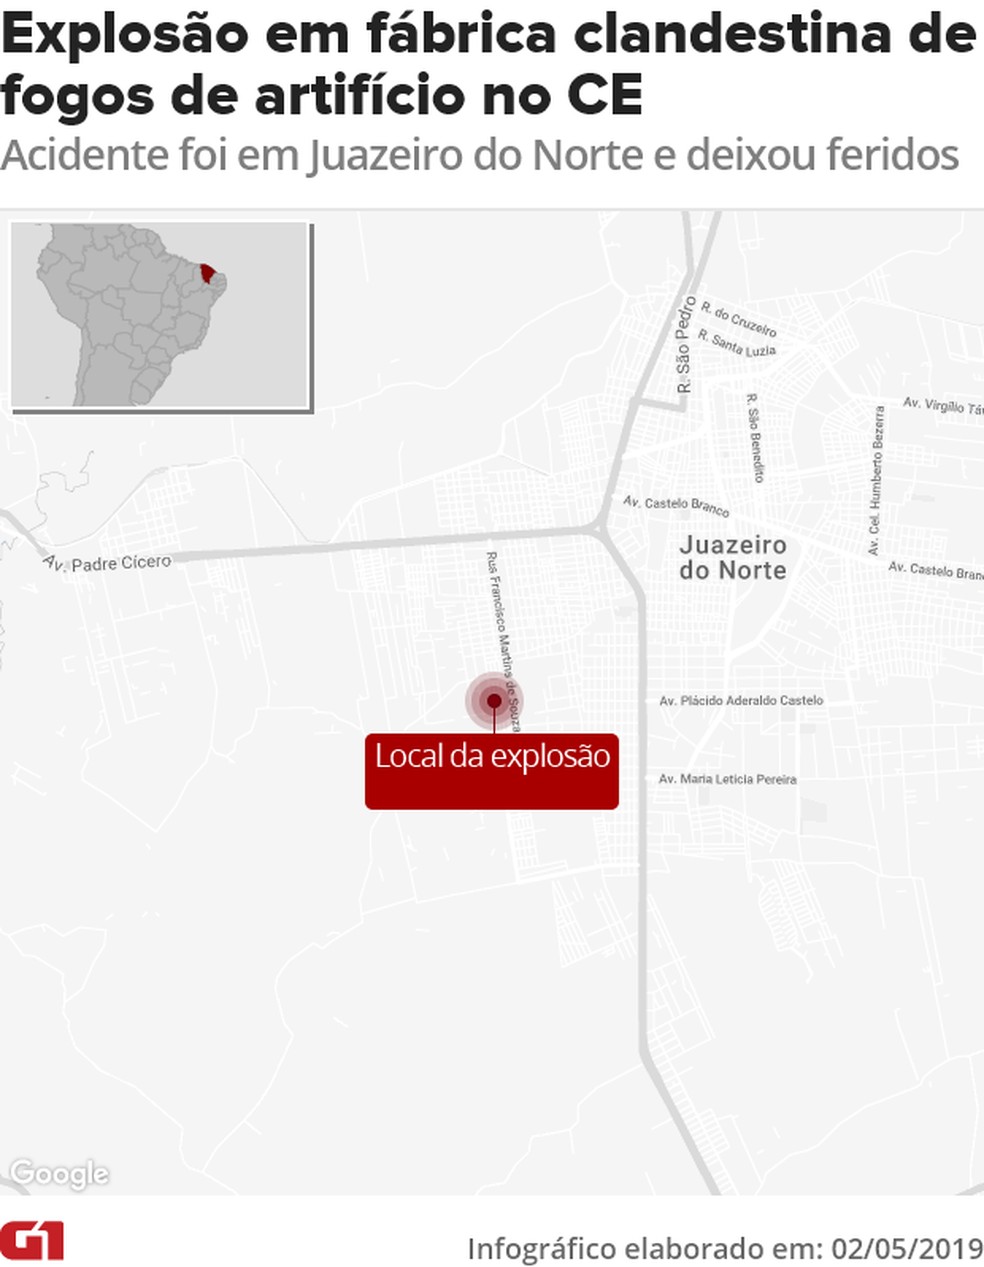 arte explosao - Explosão destrói fábrica clandestina de fogos de artifício, atinge casas e deixa feridos em Juazeiro do Norte, no Ceará